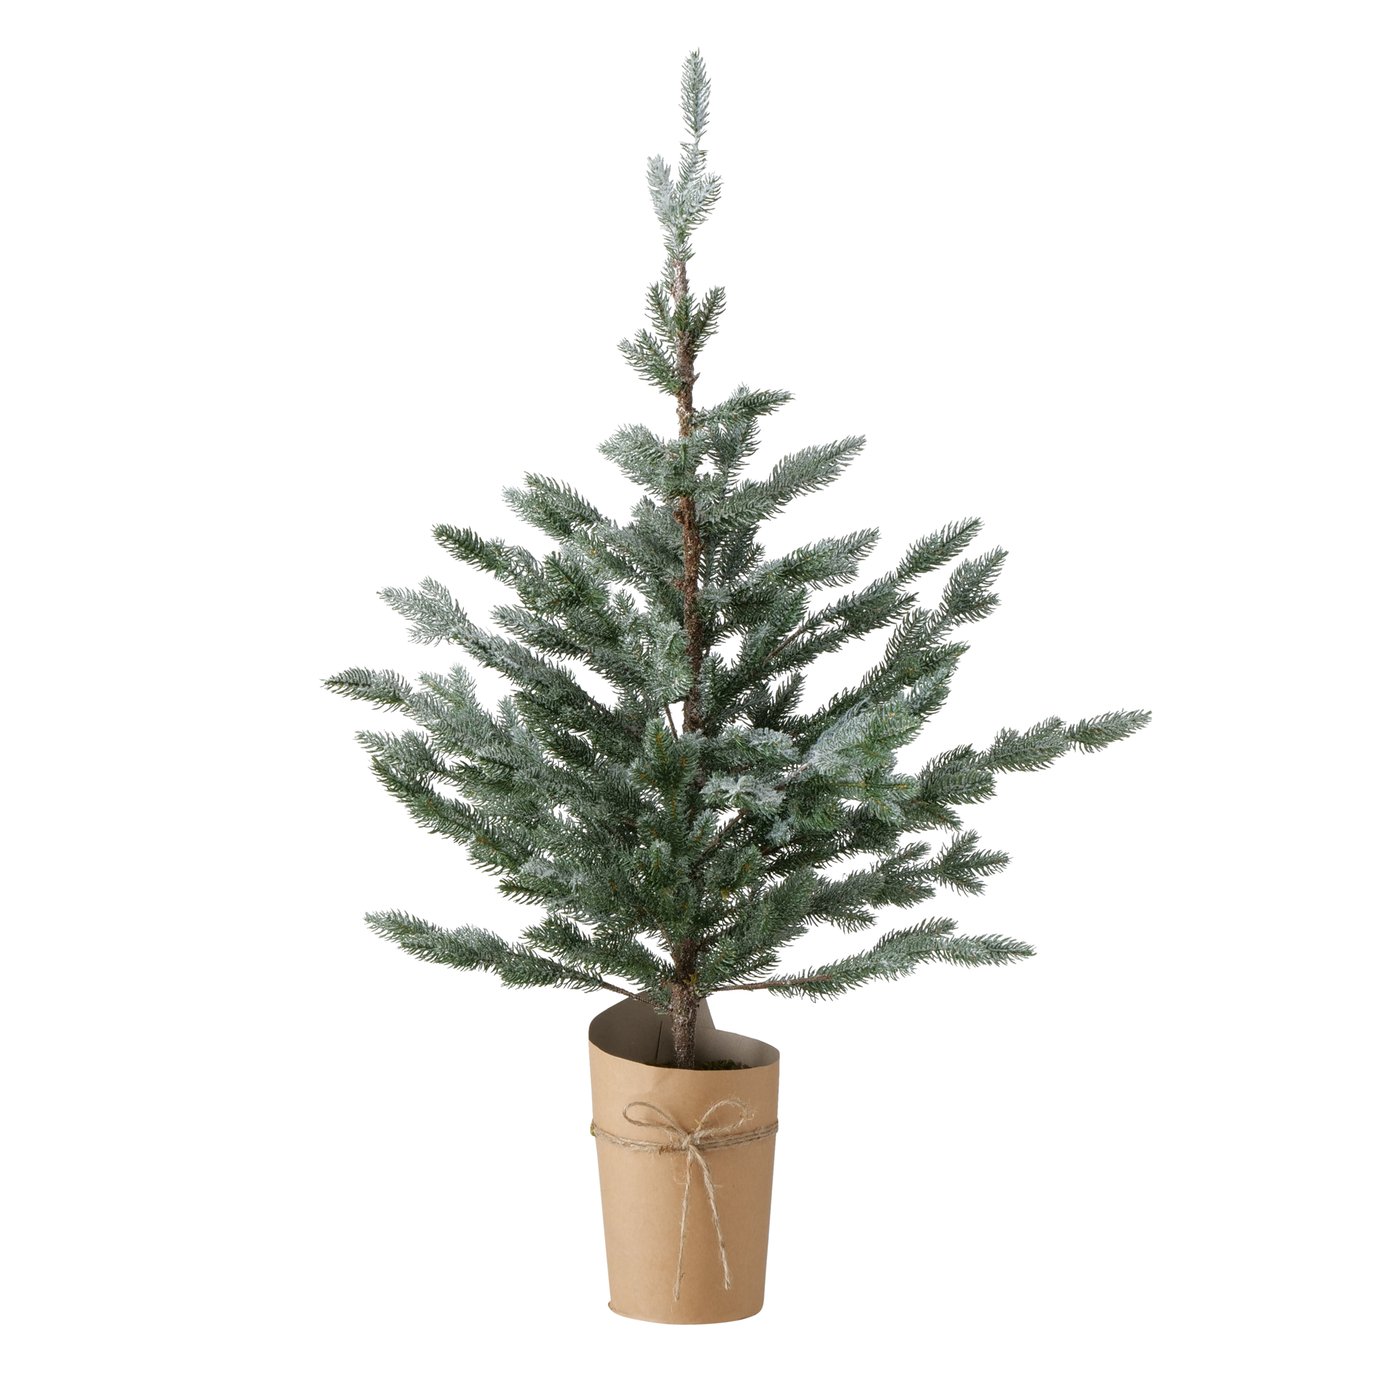 Hochwertiger künstlicher Weihnachtsbaum im Topf grün beschneit Höhe 100cm, 2006371, 4020607810747, Boltze xmas